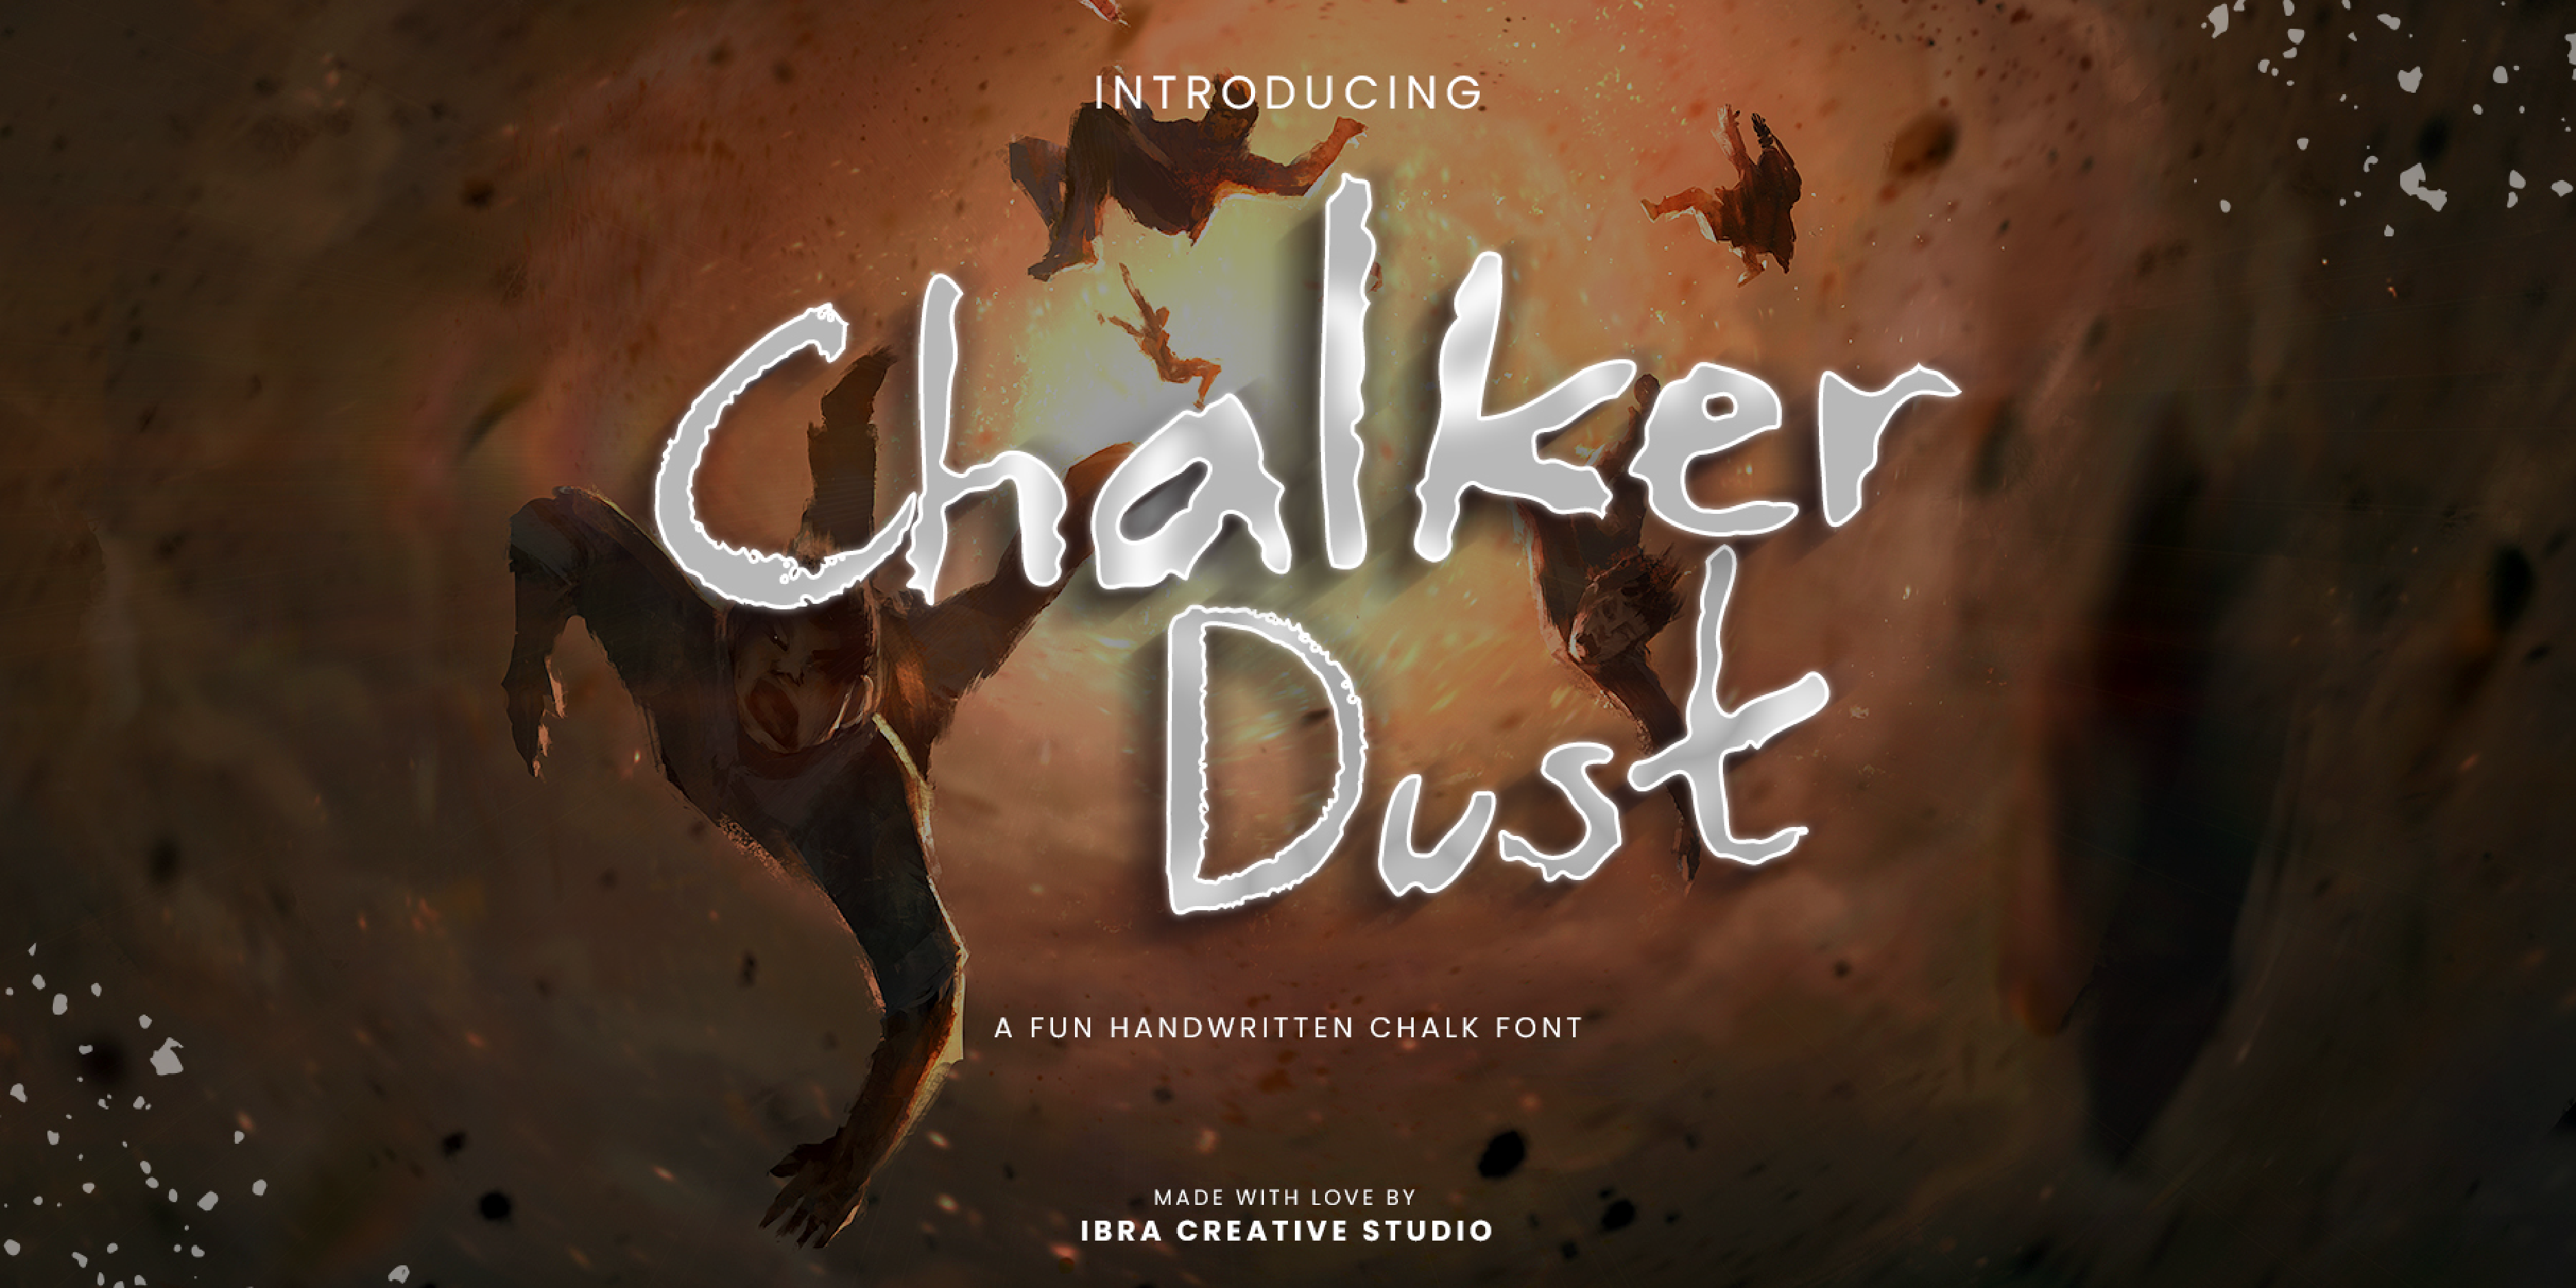 Chalker Dust